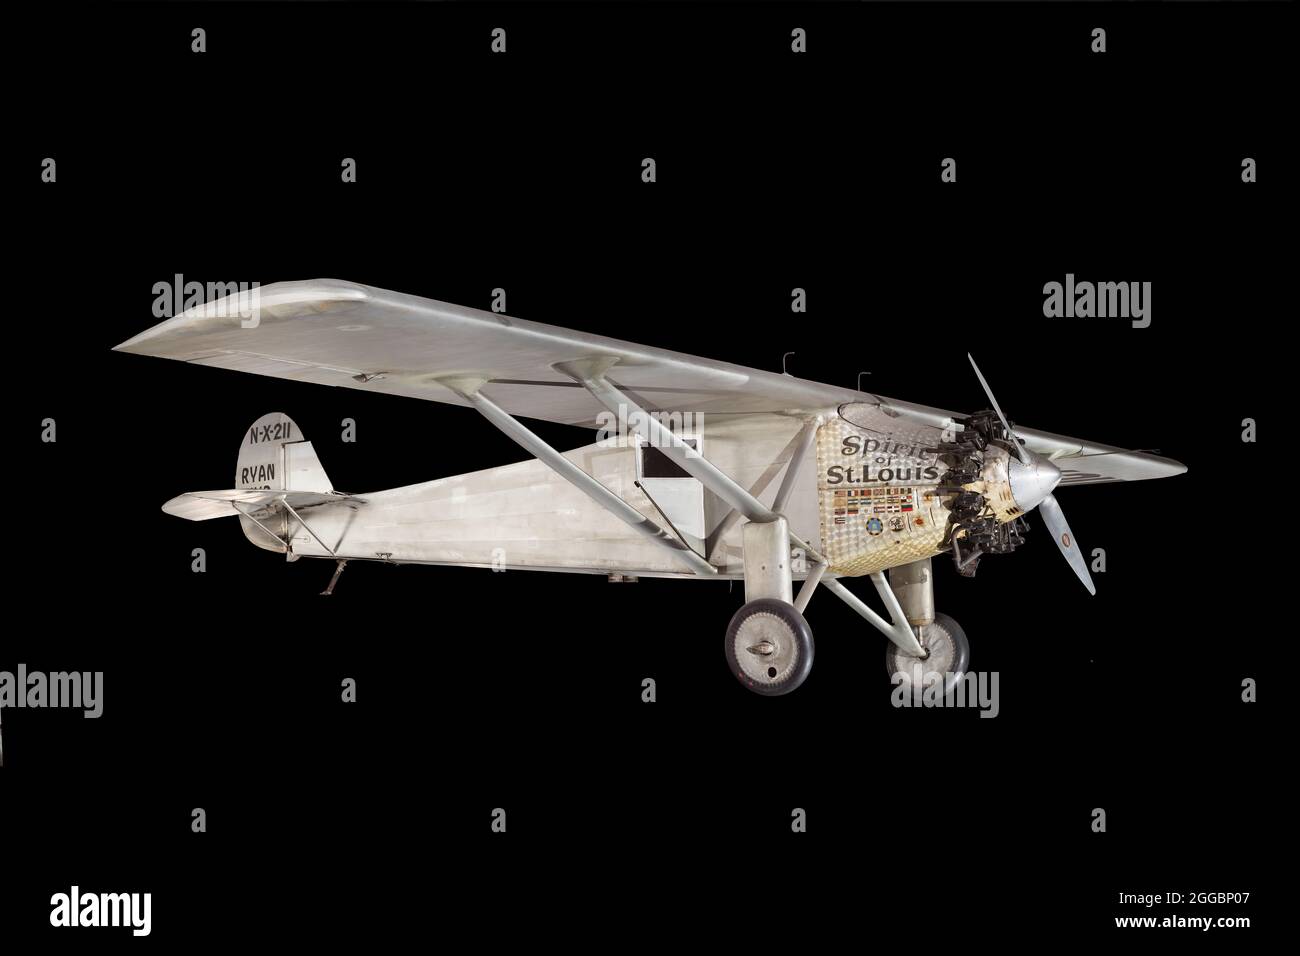 Monoplan a volé par Charles Lindbergh le 20-21 1927 mai sur le premier vol  transatlantique en solo. Tissu dopé de couleur argent recouvert d'une seule  aile haute radiale du moteur monoplan. L'Esprit